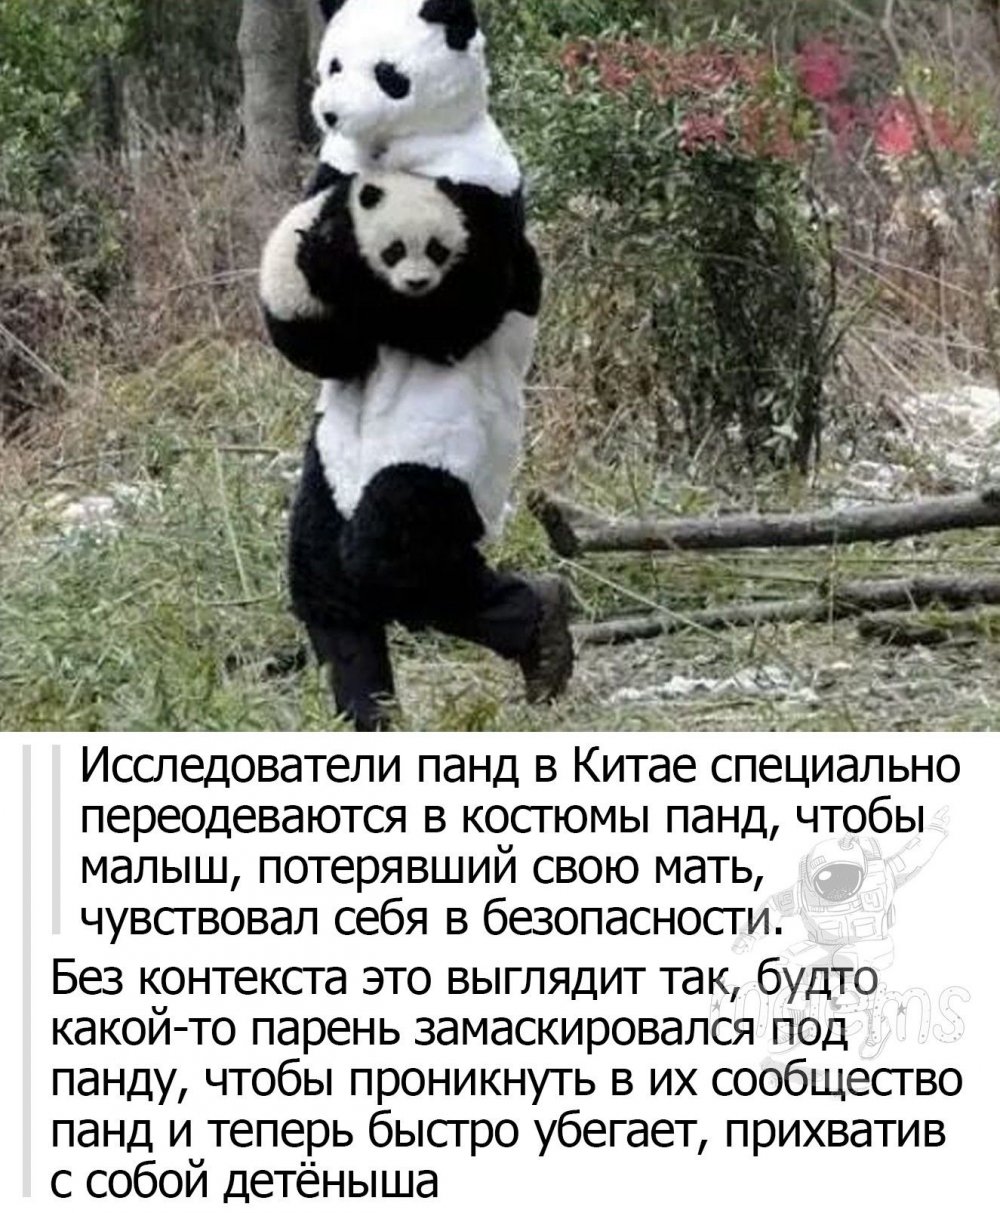 Панда вор